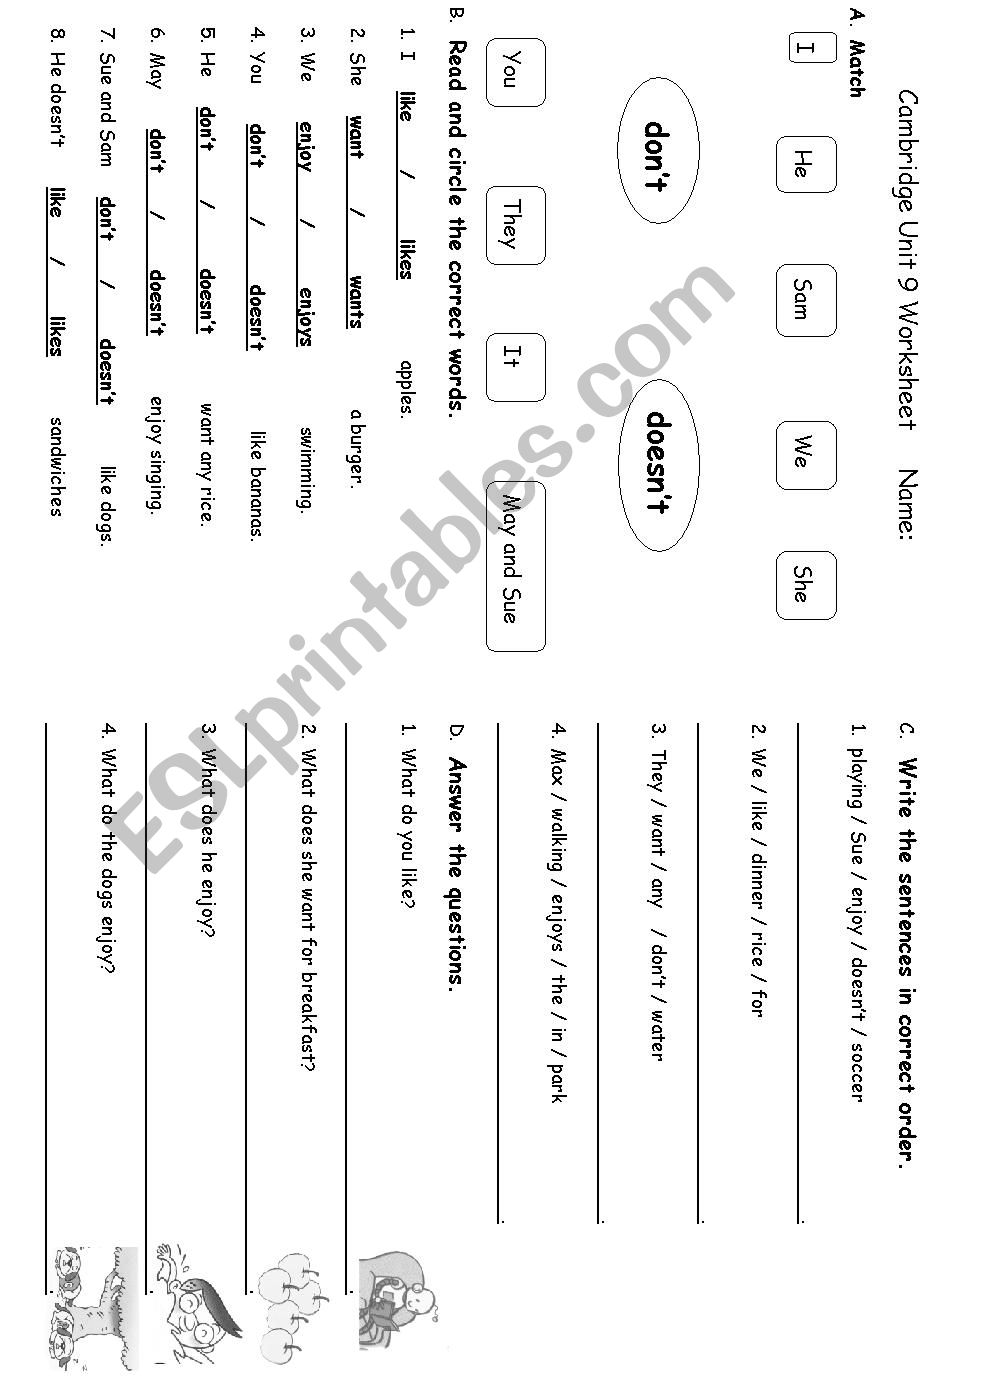 present-simple-worksheets-esl-grammar-tenses-beginners-educational-printables-preschool